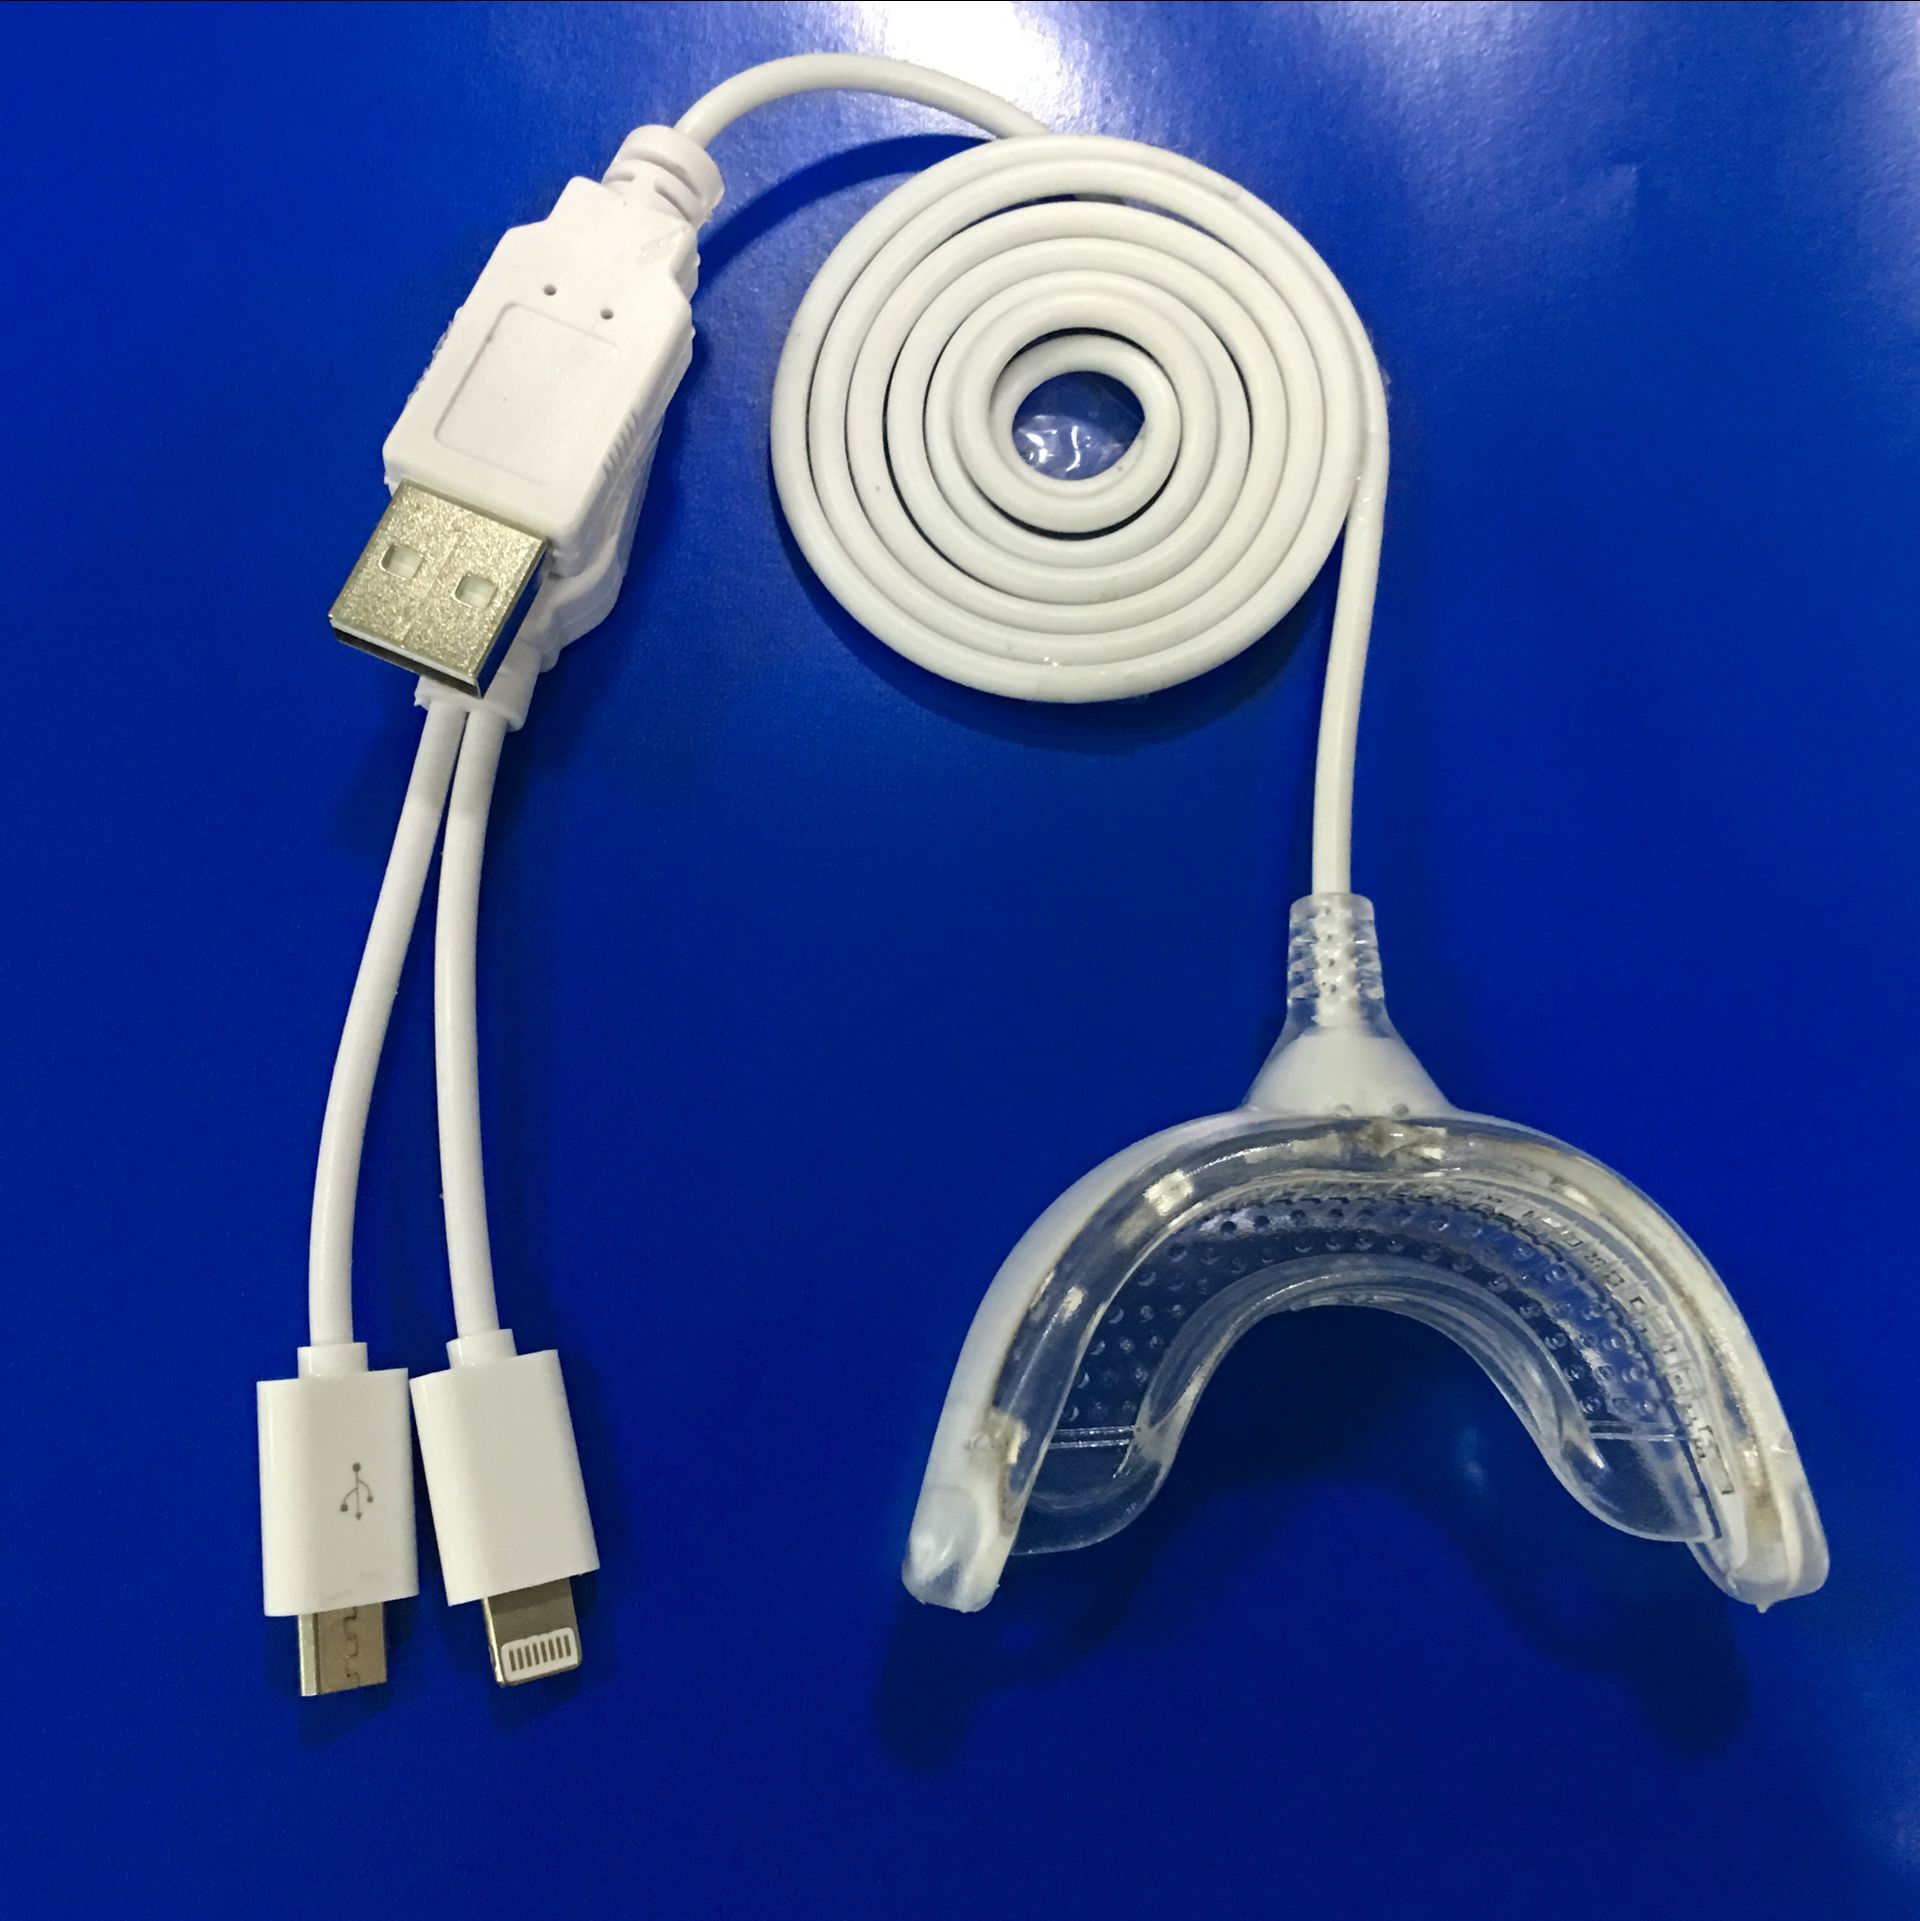 Grin365 dental con láser USB especiales que blanquean la luz para dientes sensibles con 12 Las luces LED azul y 4 Desensibilización de luces LED rojo, Impermeabilizado para la seguridad